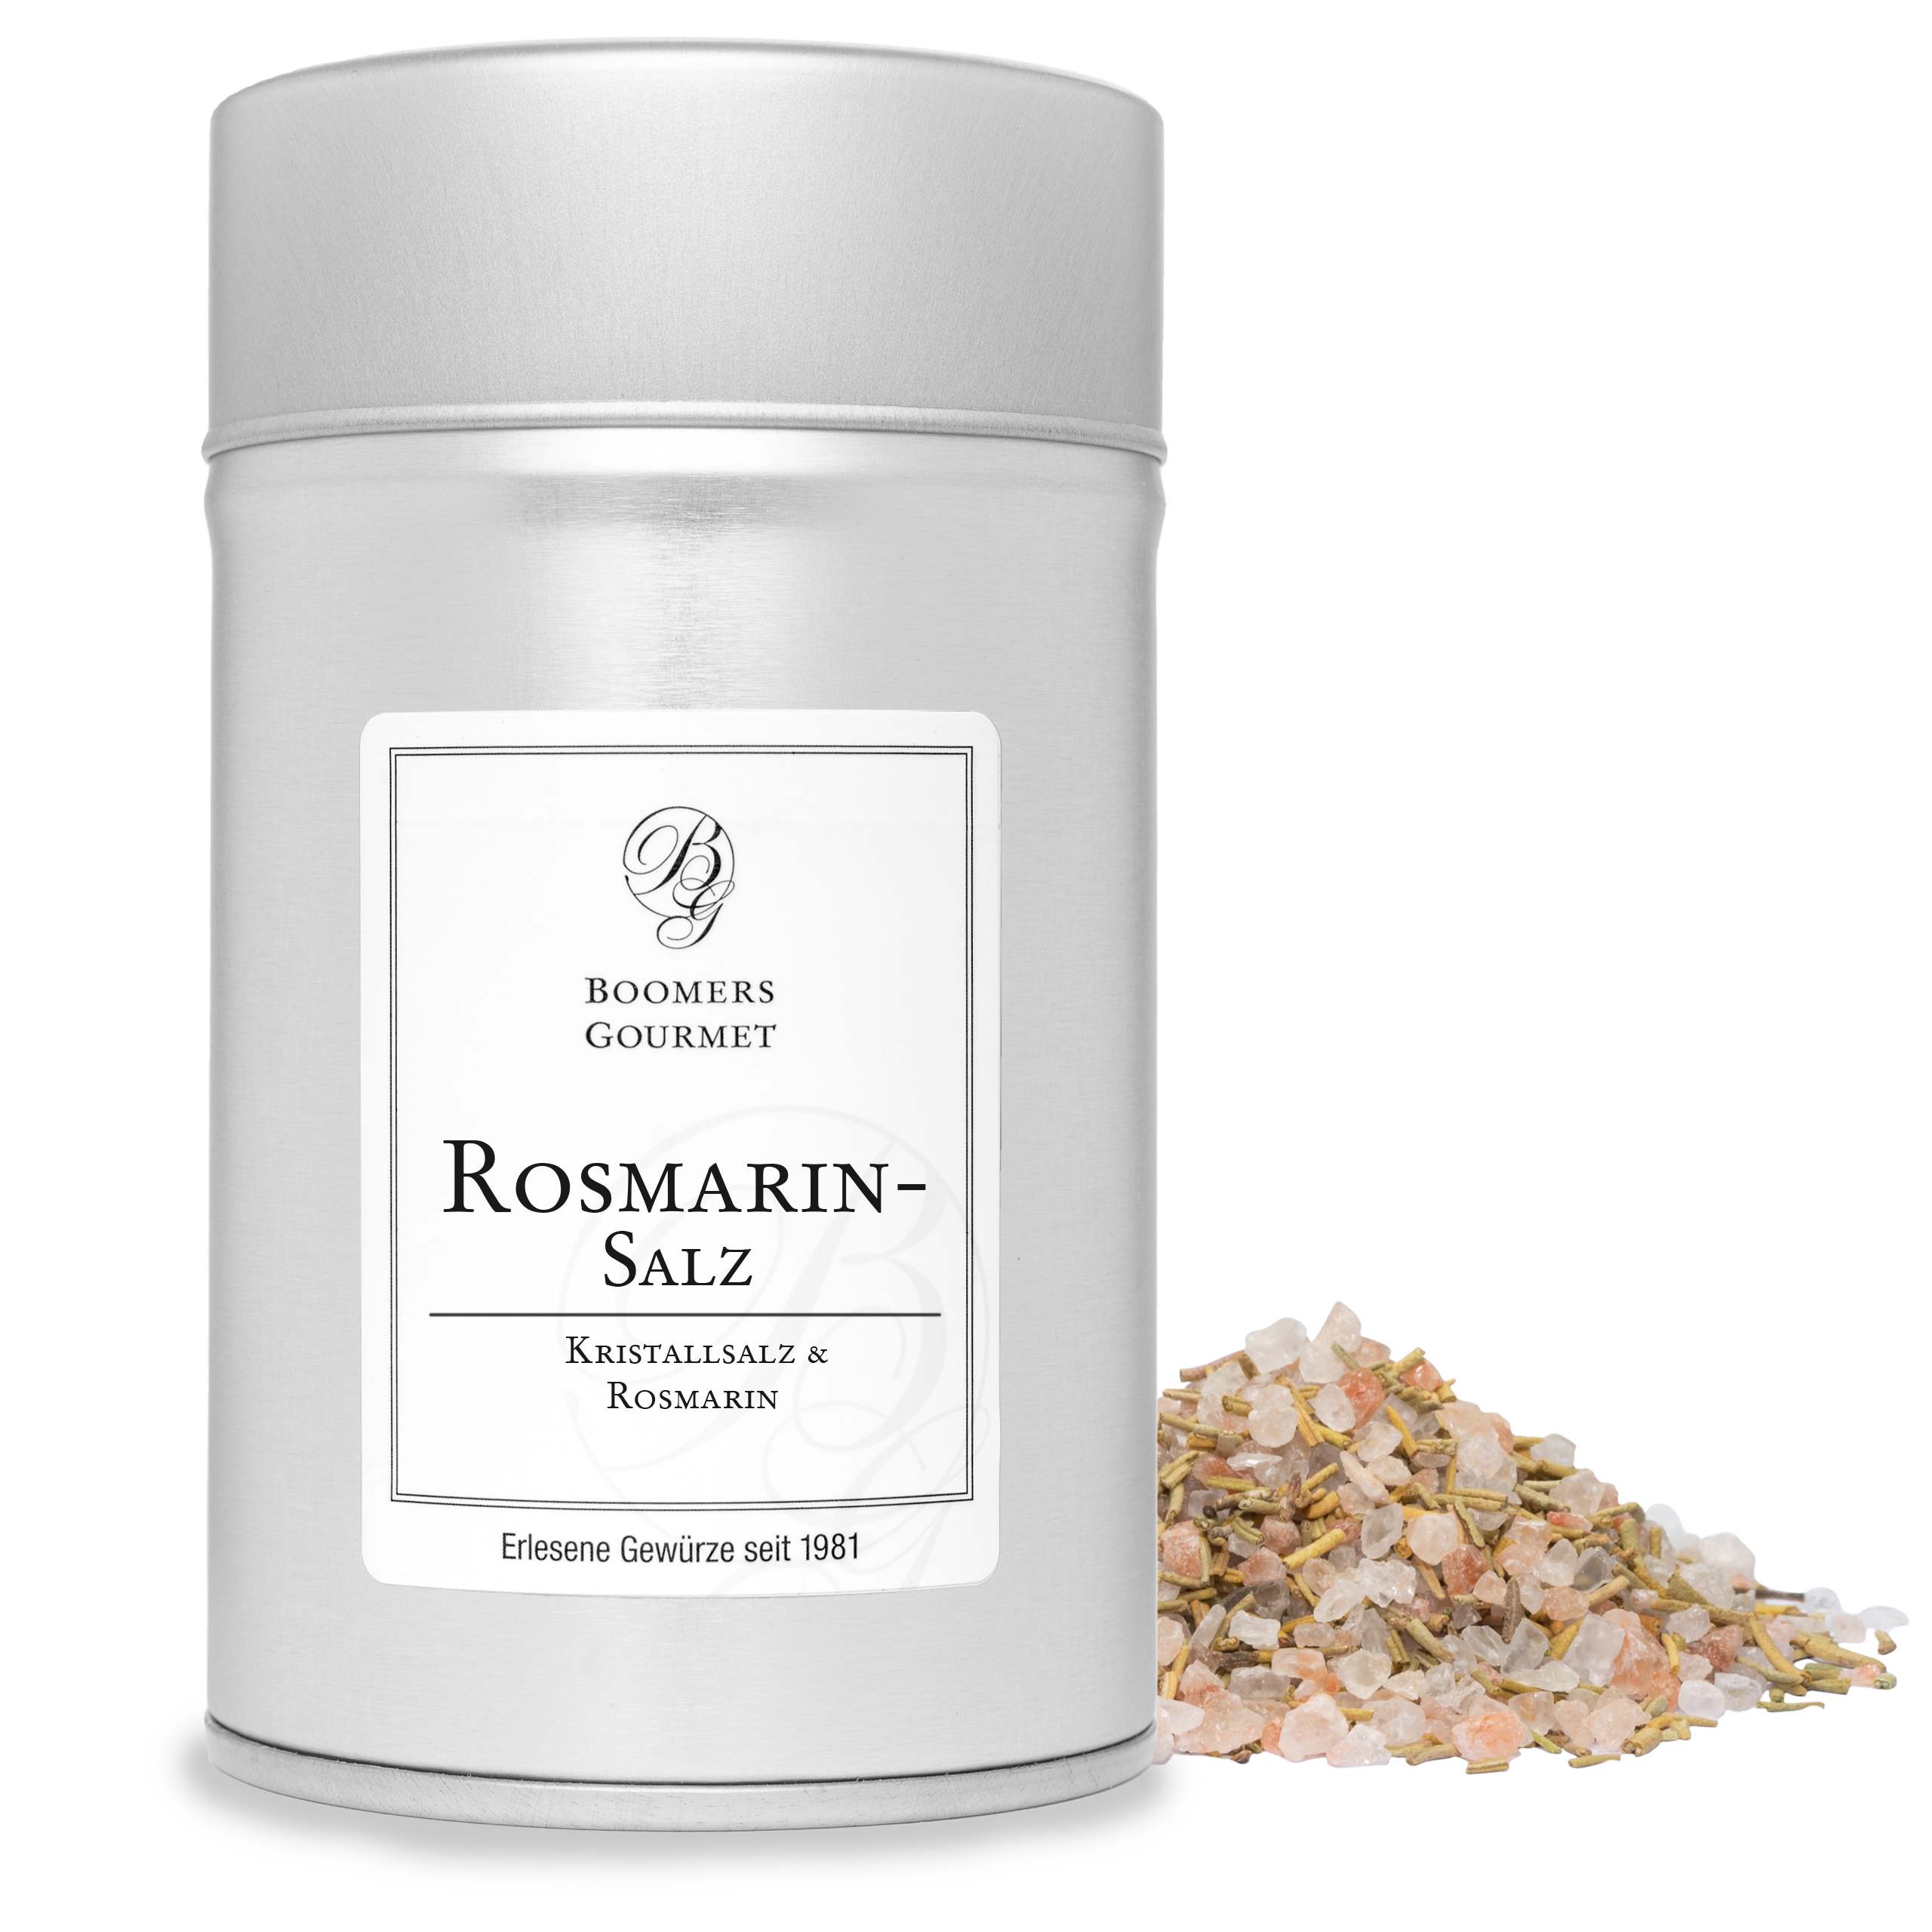 Rosmarin - Salz